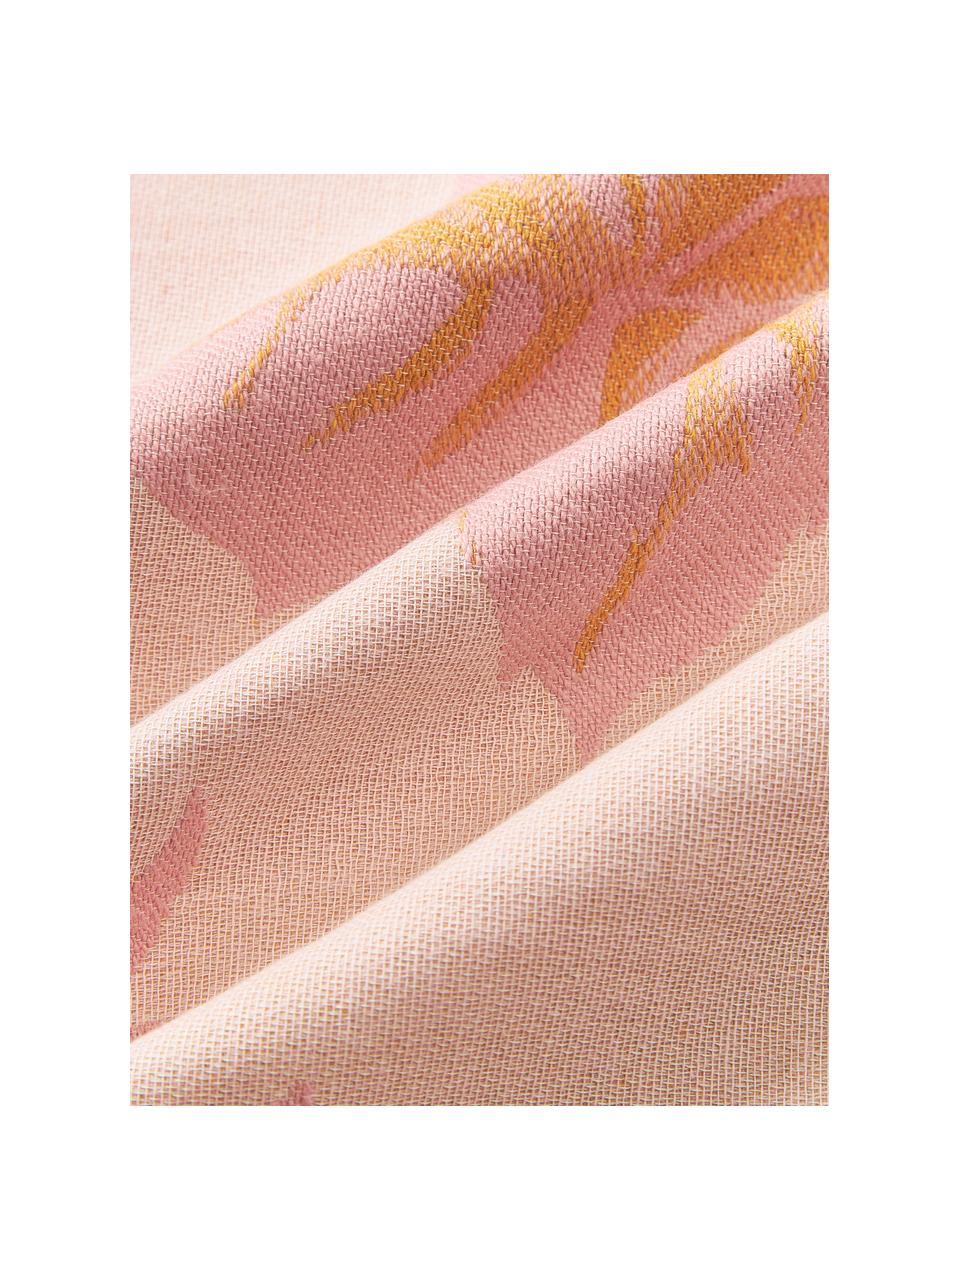 Poszewka na poduszkę z bawełny Breight, 100% bawełna, Blady różowy, pomarańczowy, S 50 x D 50 cm